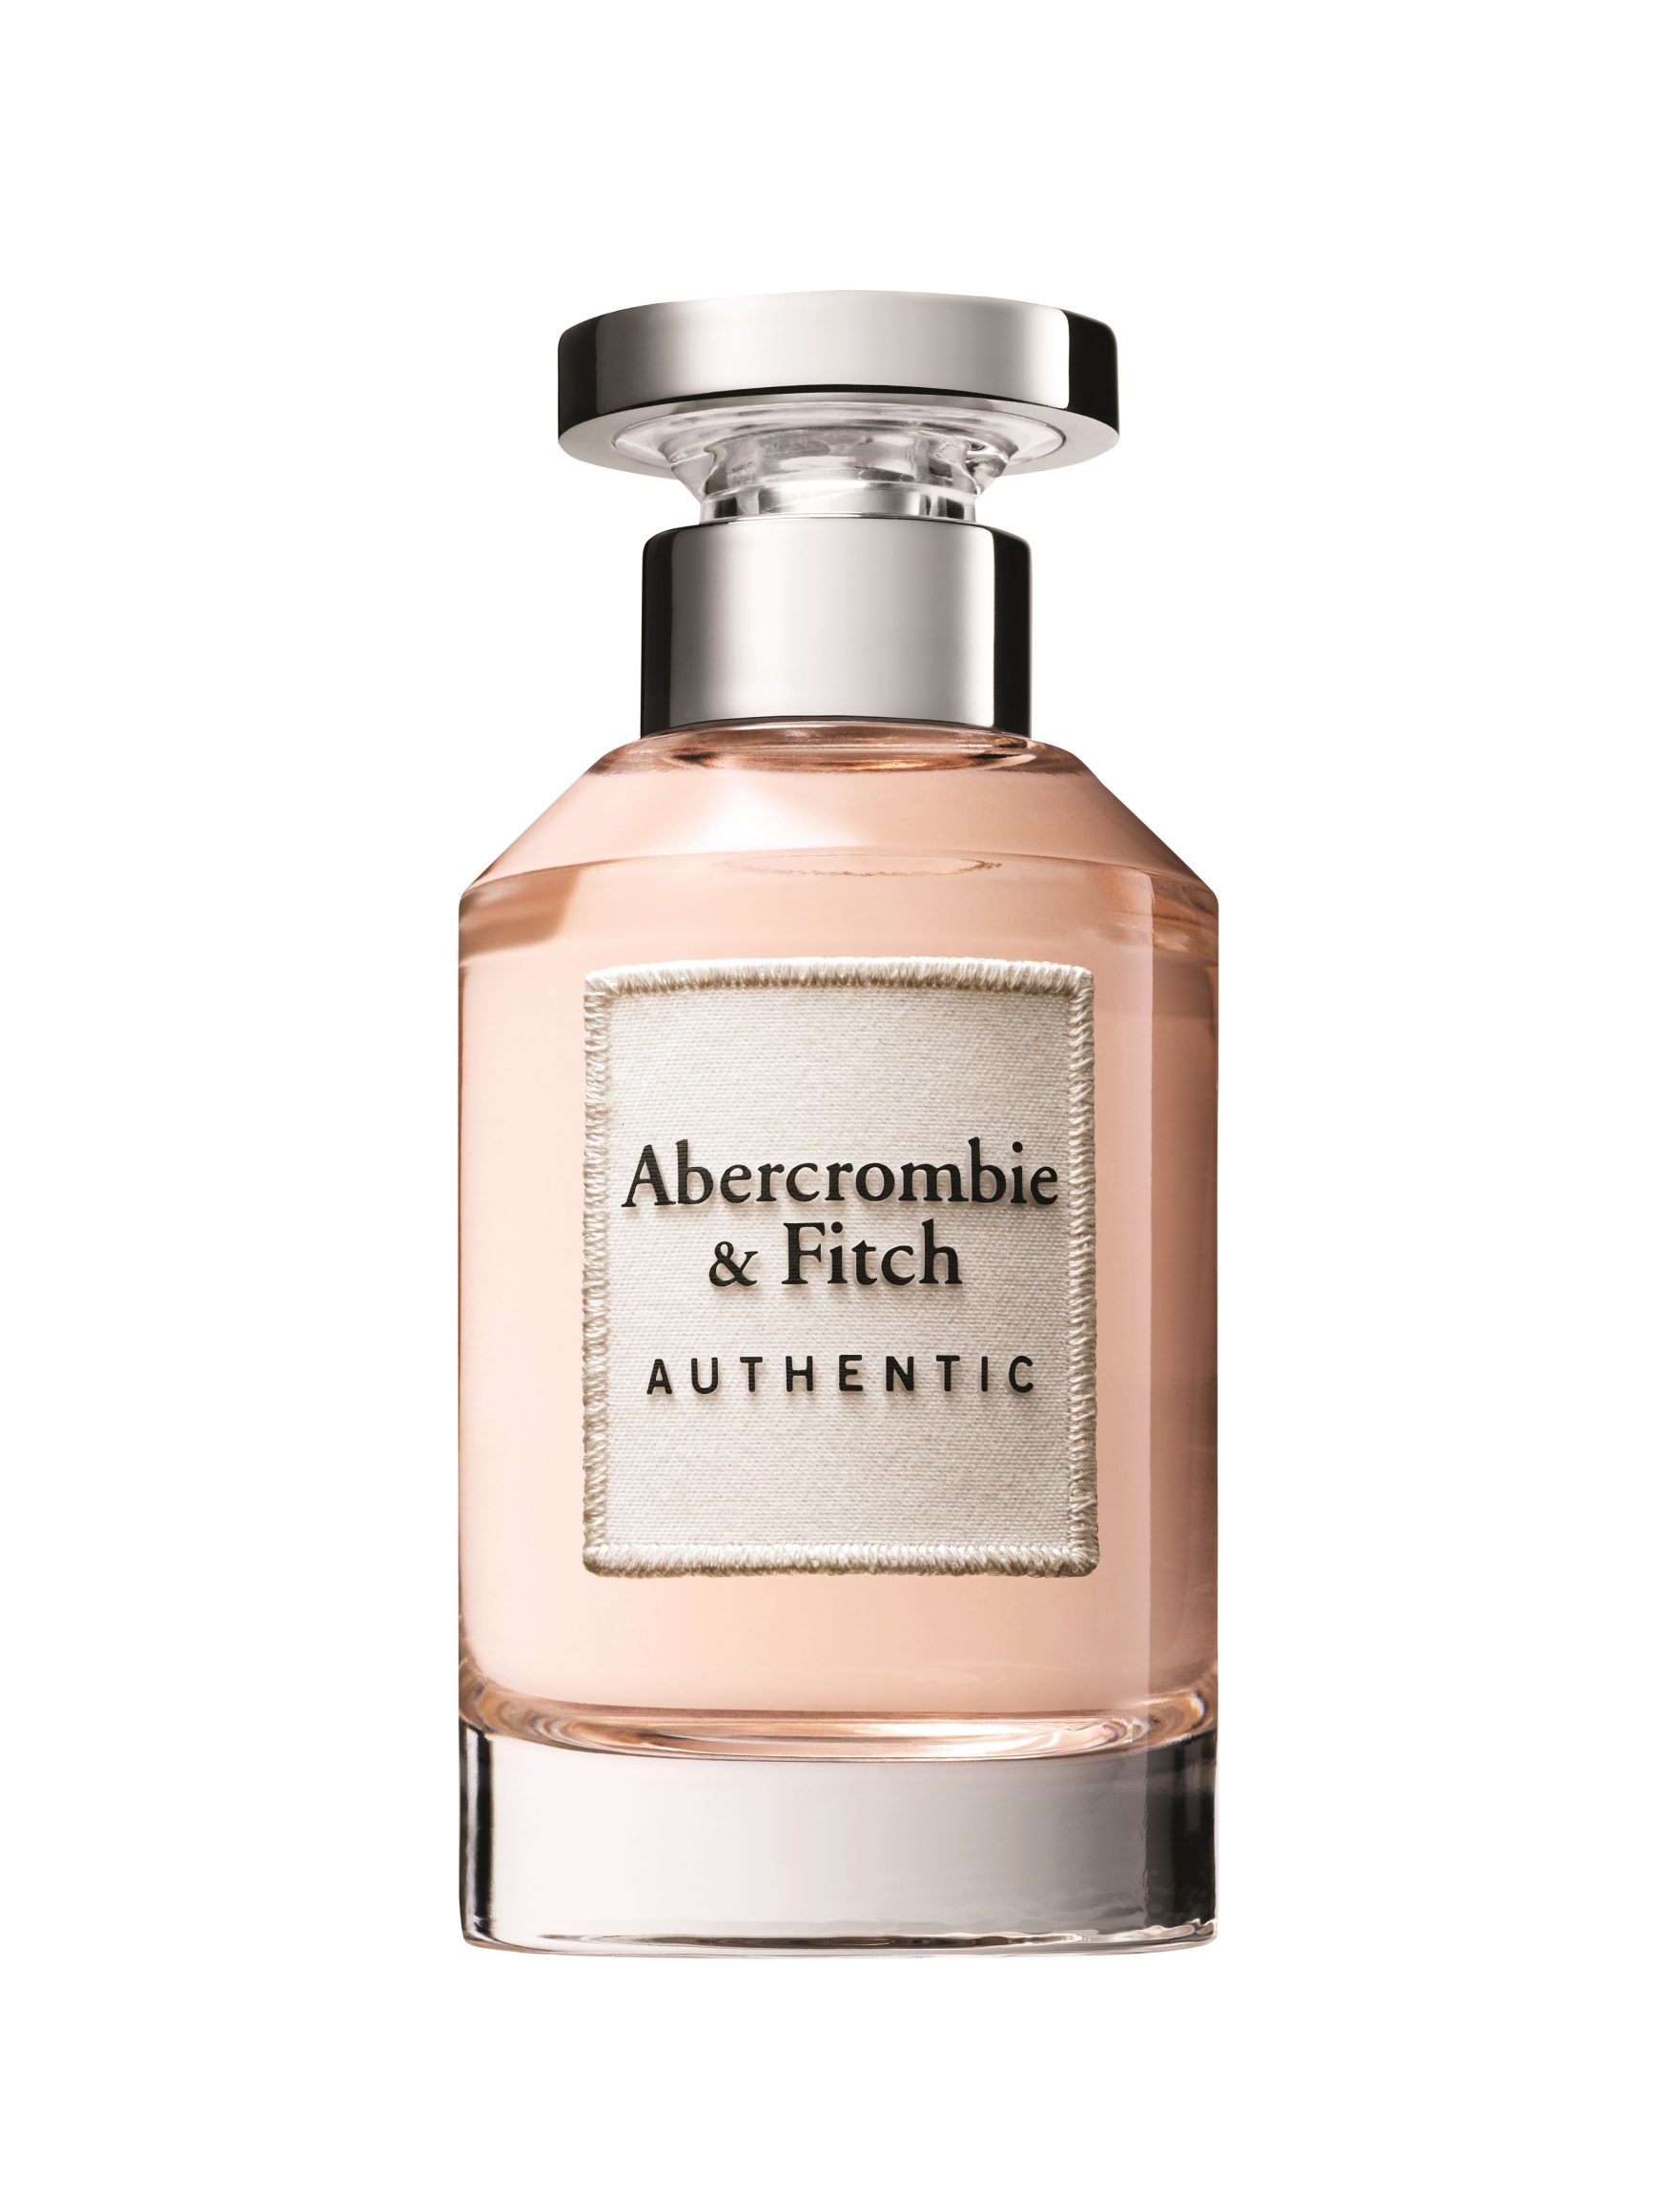 Купить Парфюмерная вода Abercrombie & Fitch, Abercrombie & Fitch Authentic Woman 100ml тестер, США